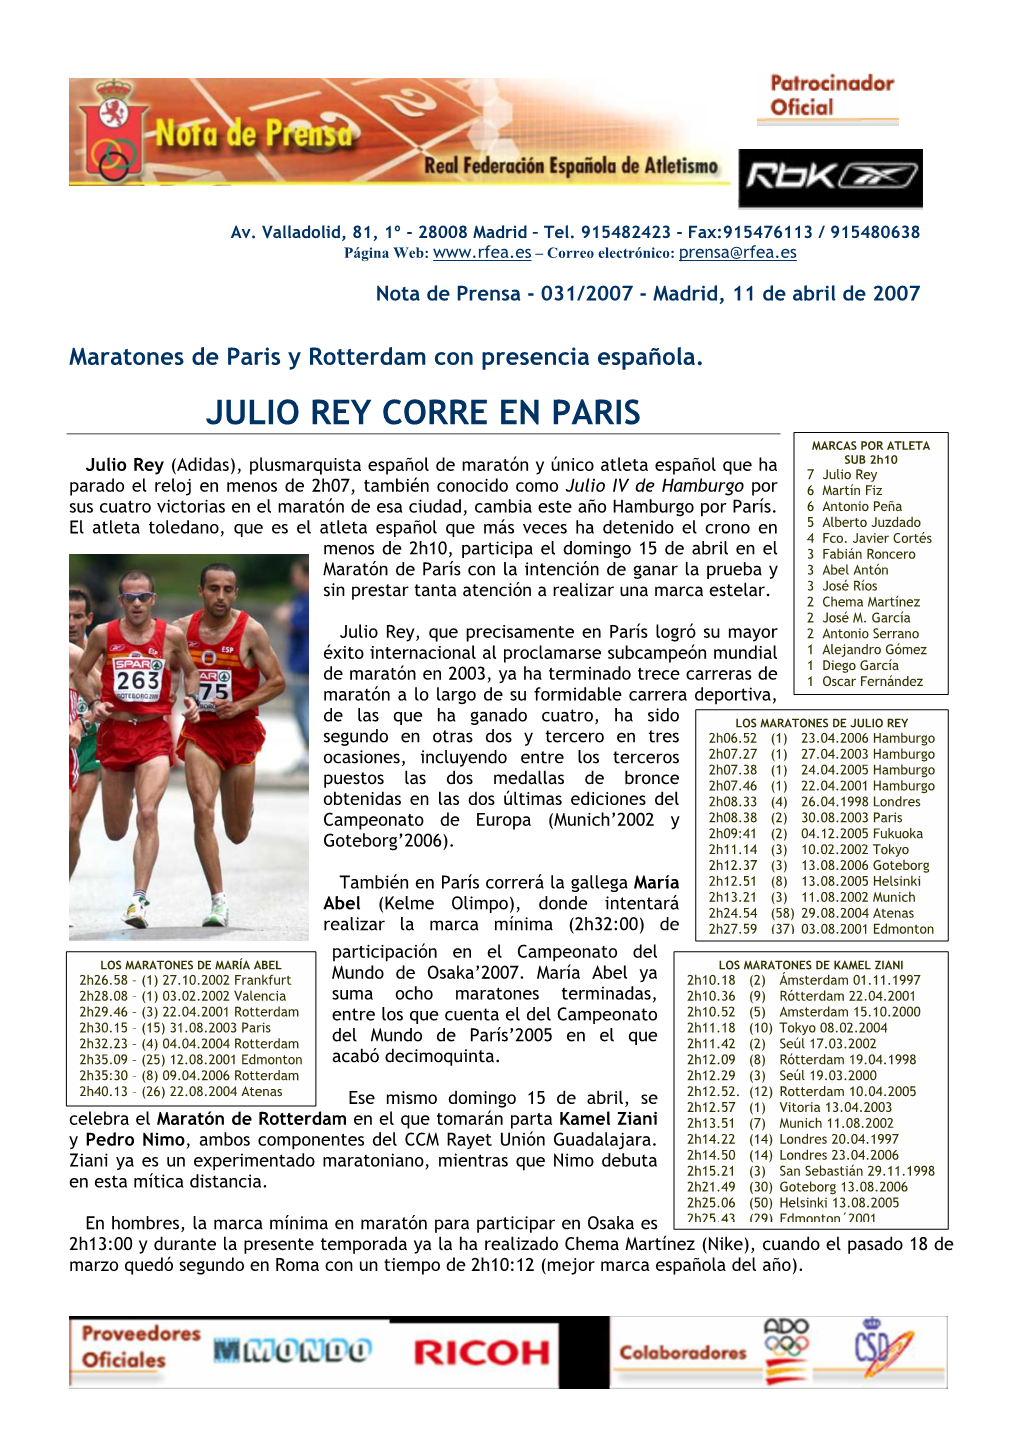 Julio Rey Corre En Paris